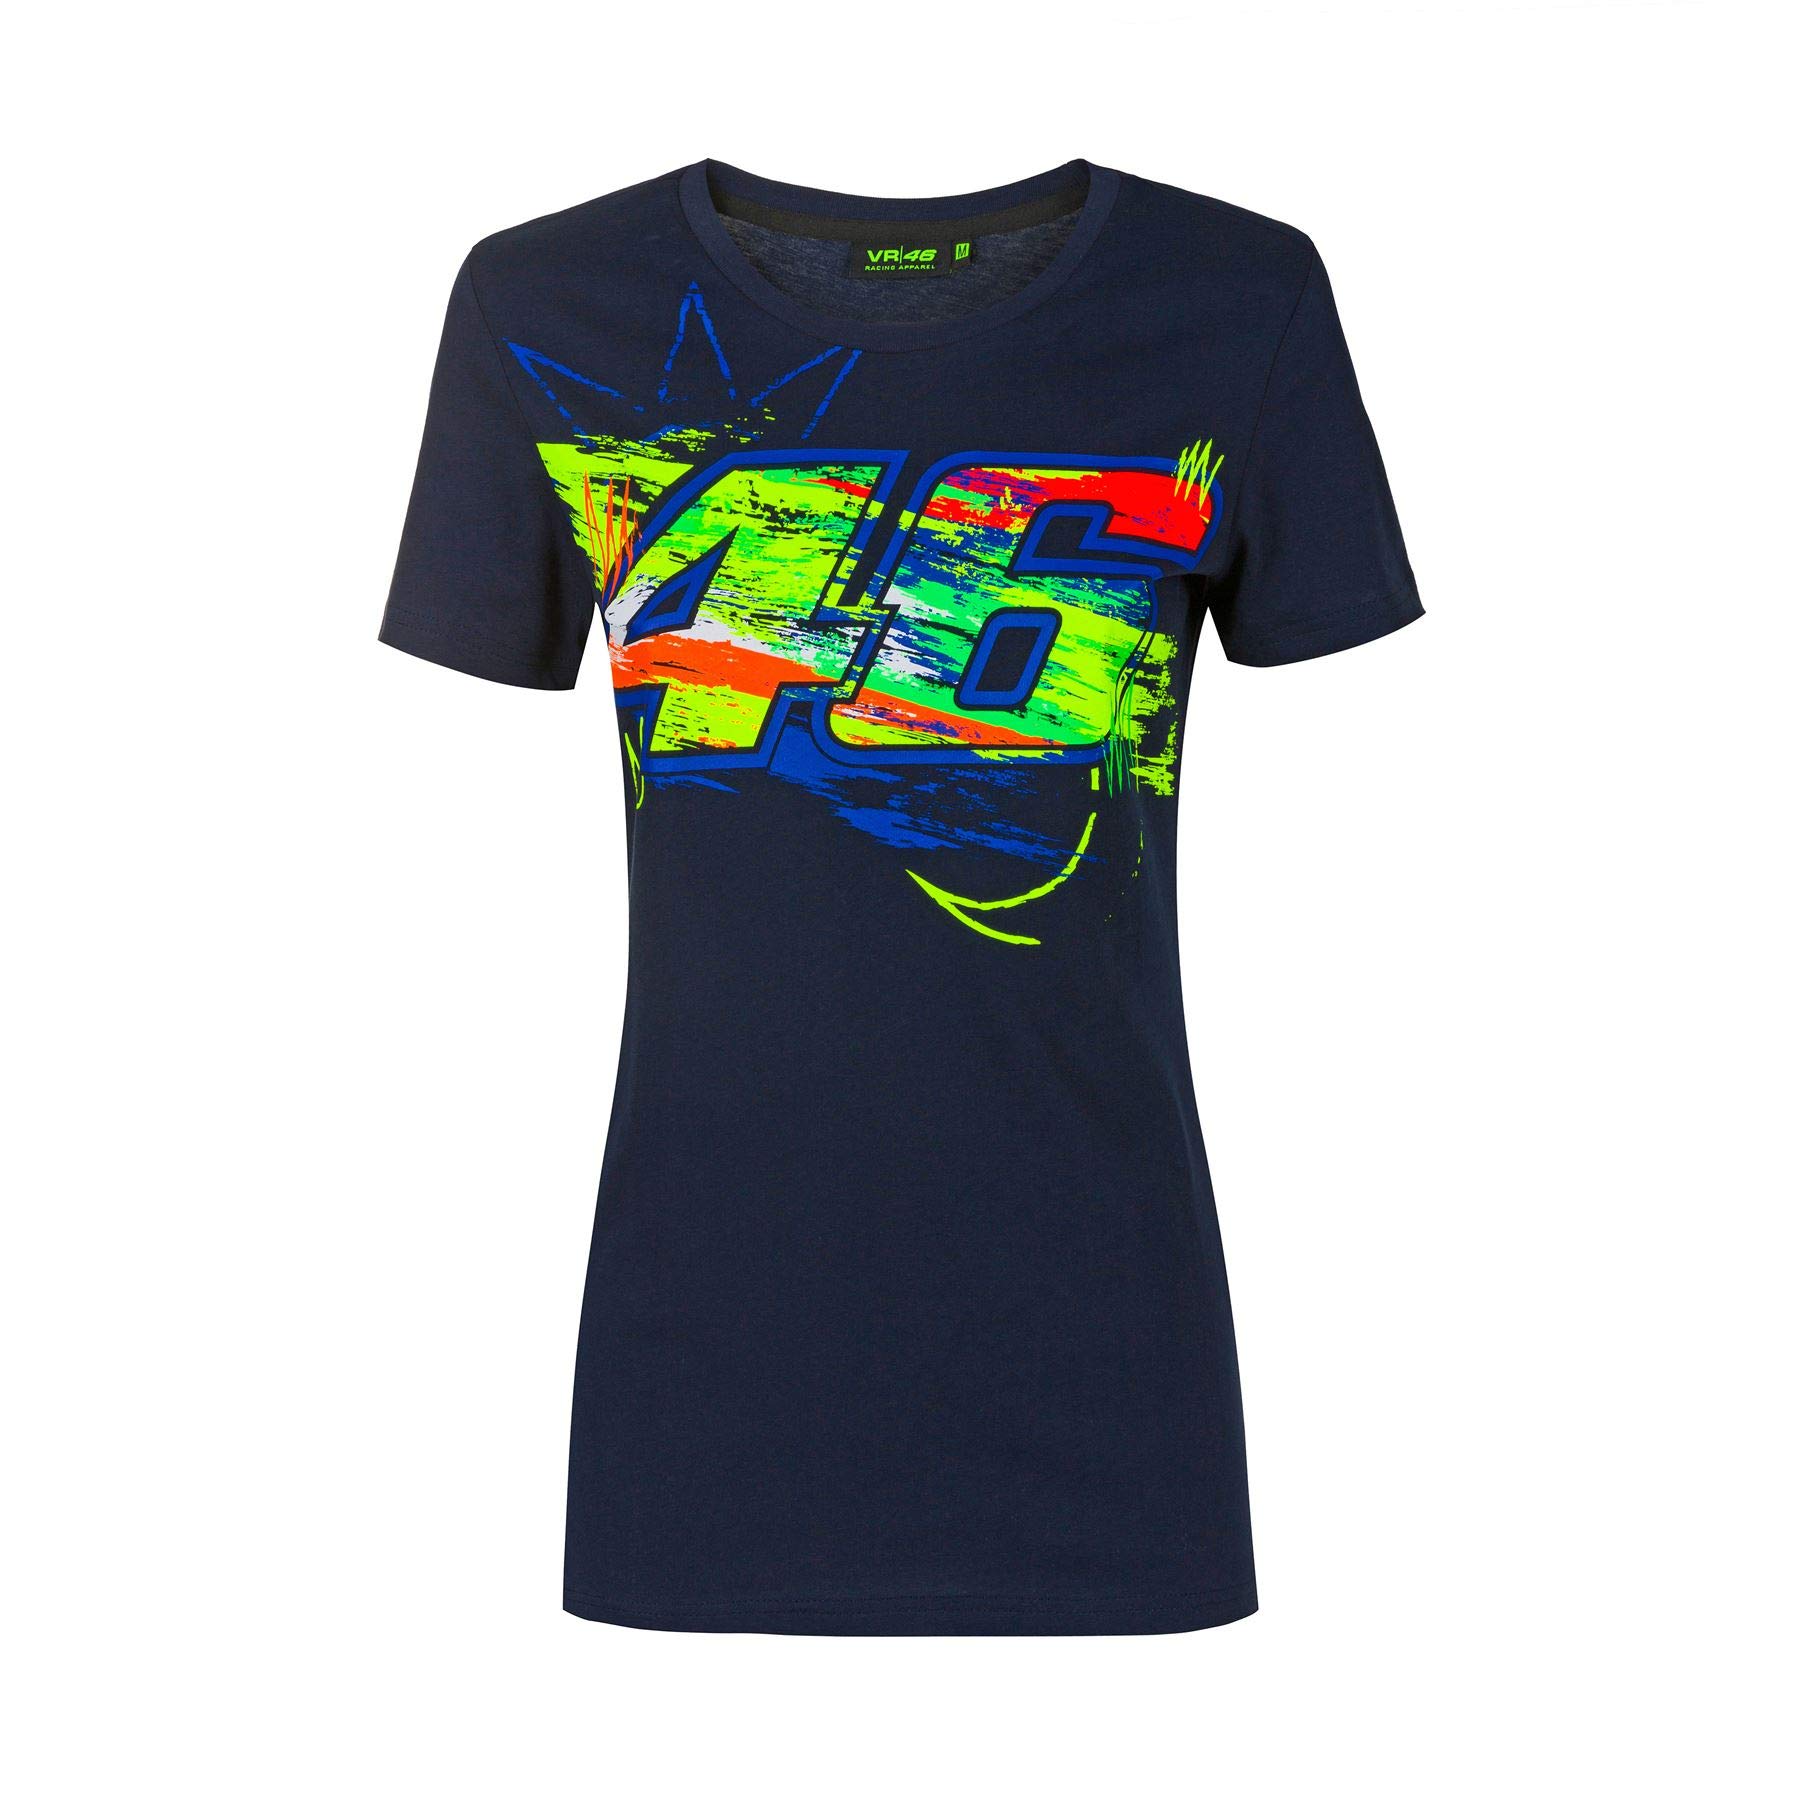 Valentino Rossi T-Shirt Winter Test XL,Blue,Woman